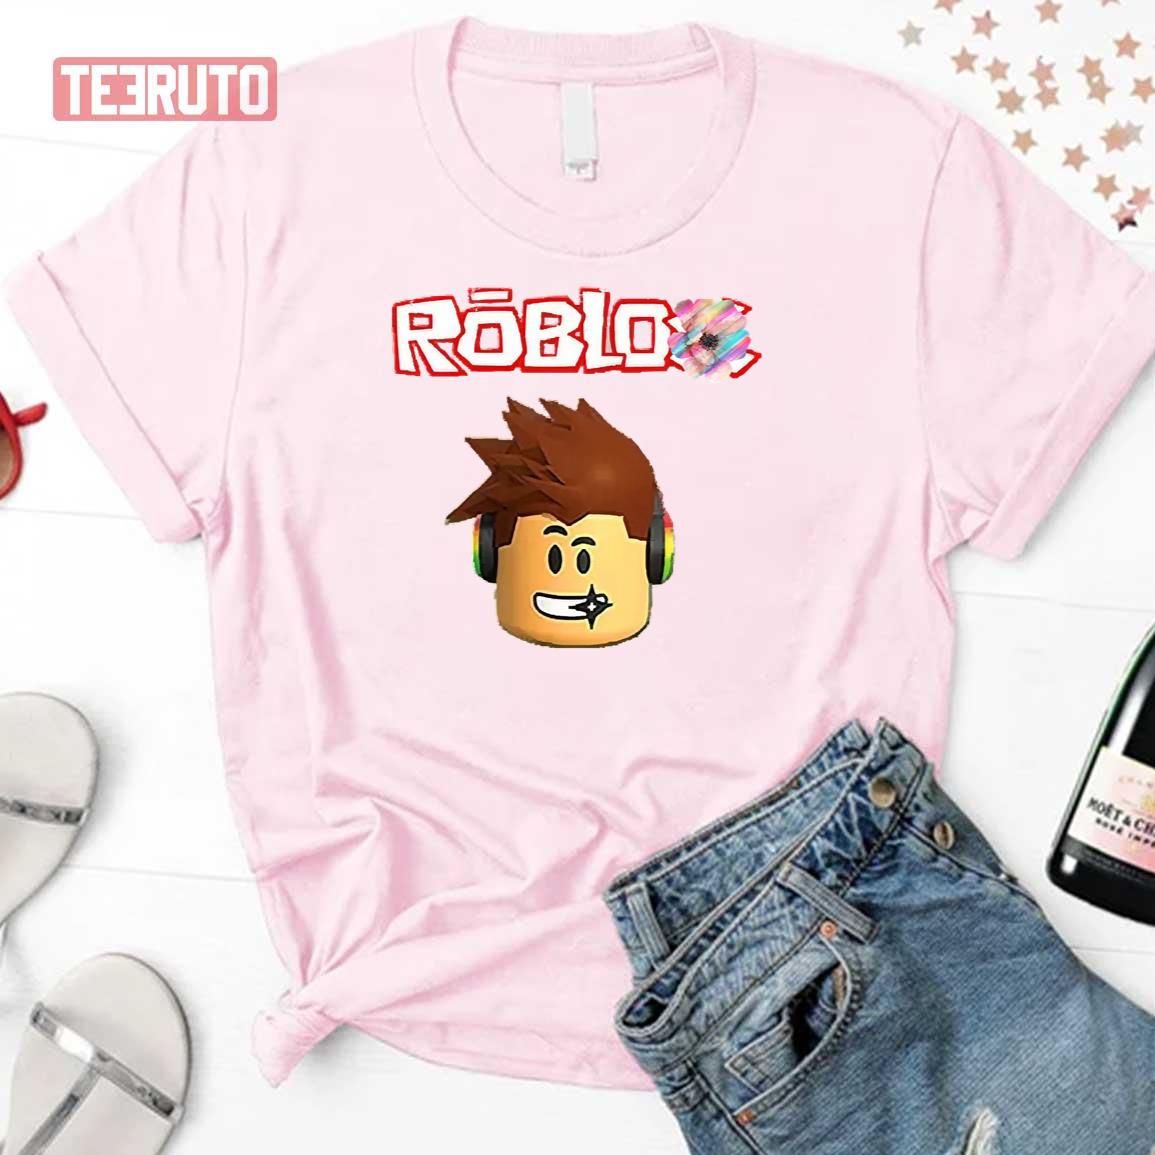 Aesthetic Roblox Boy Character Unisex Sweatshirt - Teeruto